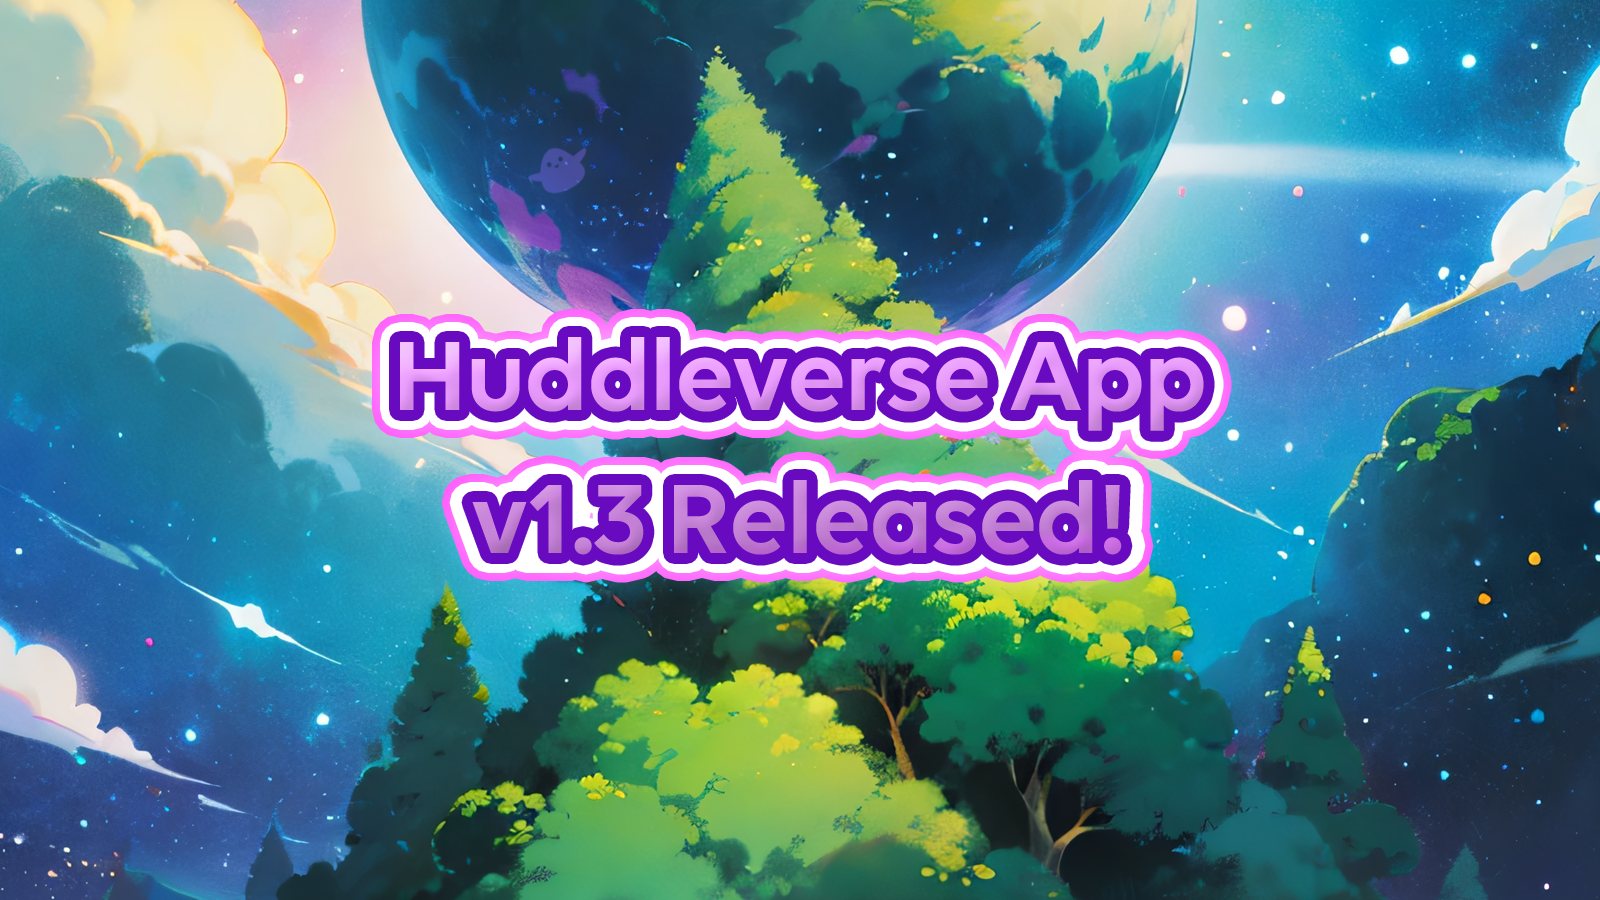 Huddleverse v1.3 Released! 🔥